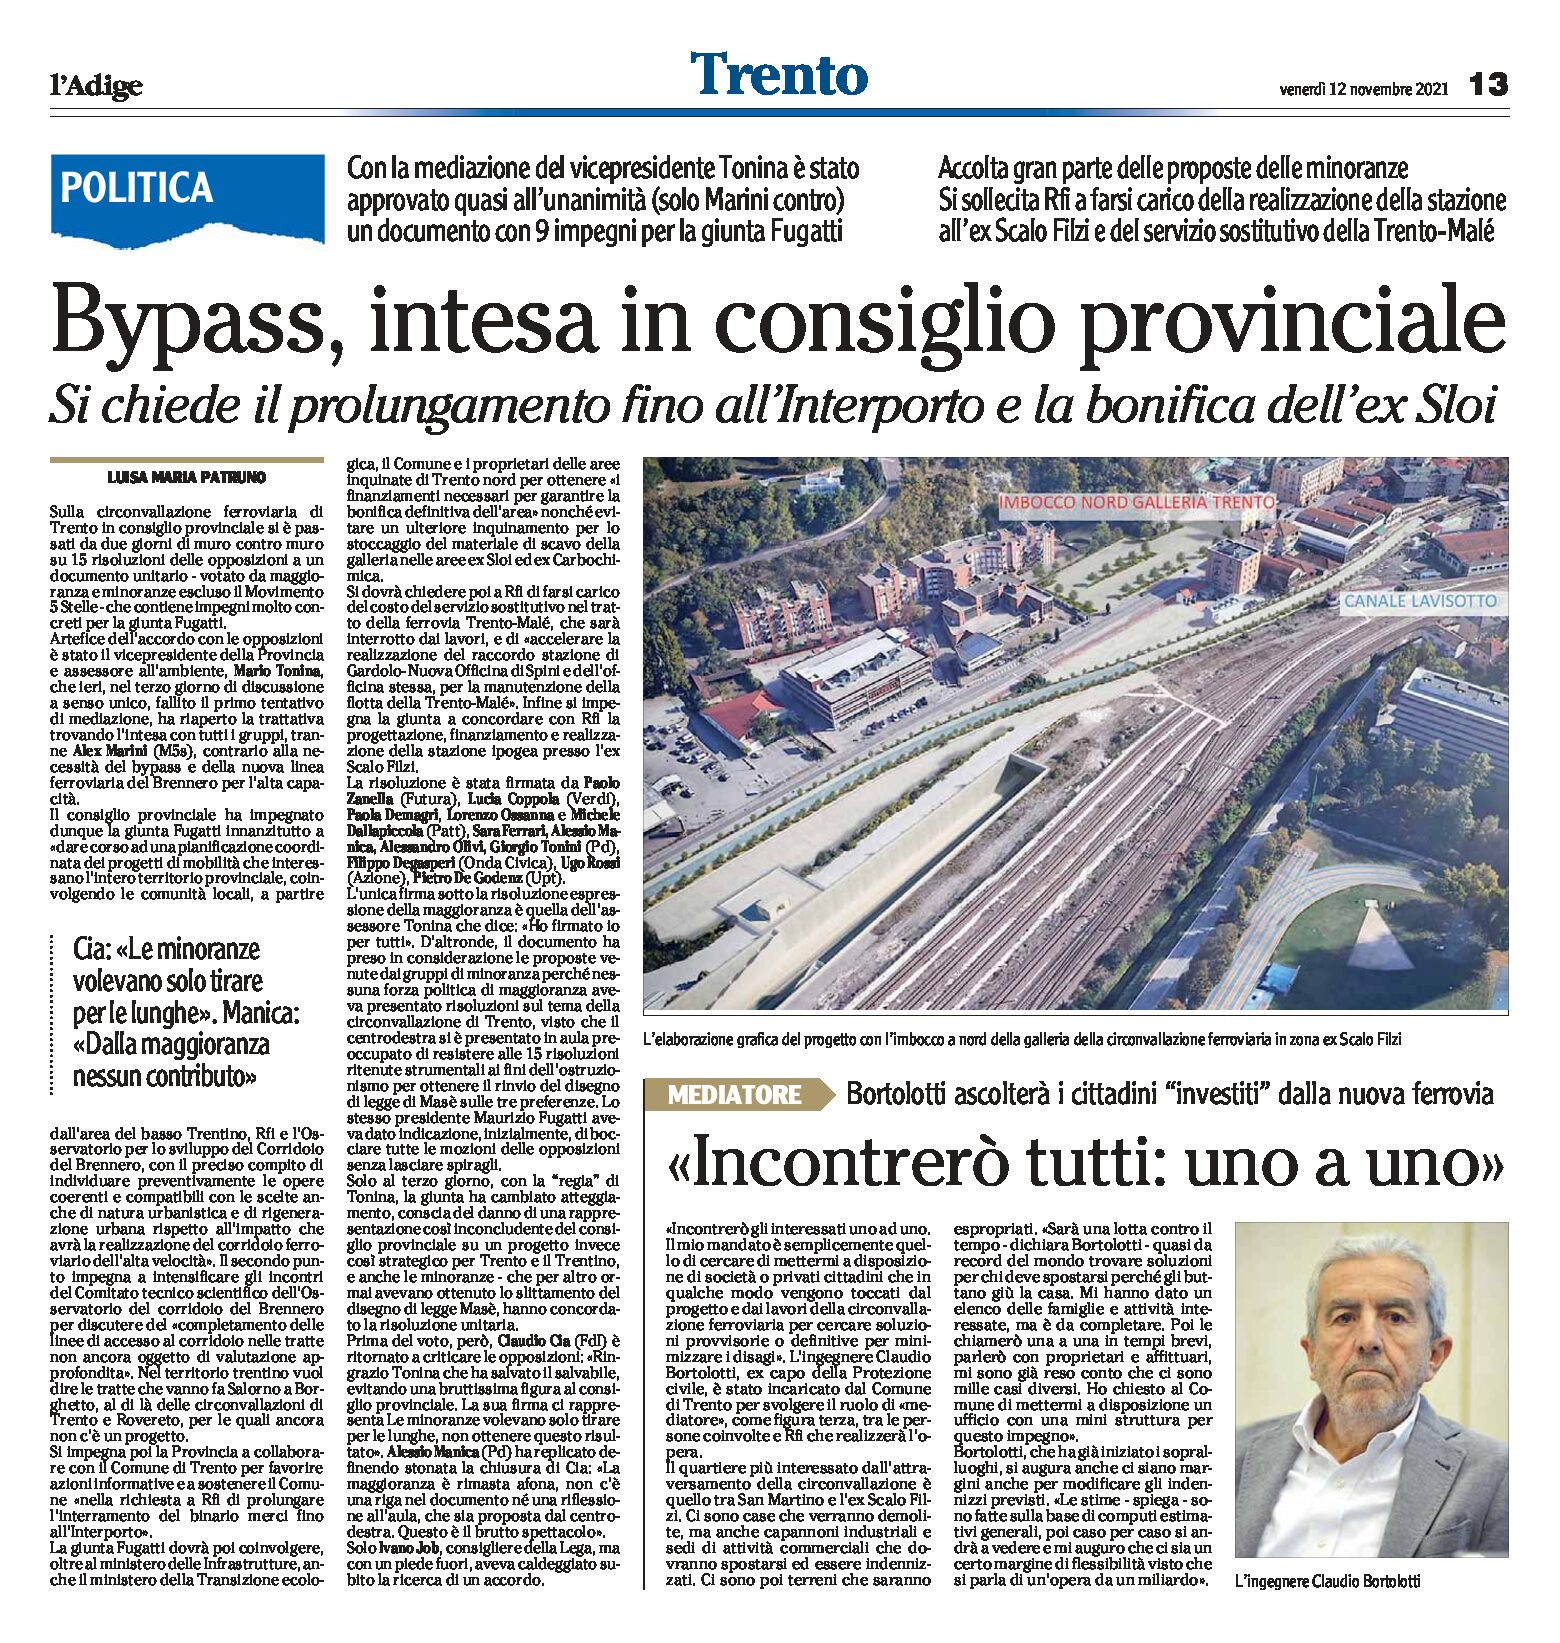 Trento, bypass: intesa in consiglio provinciale. Si chiede il prolungamento fino all’Interporto e la bonifica dell’ex Sloi